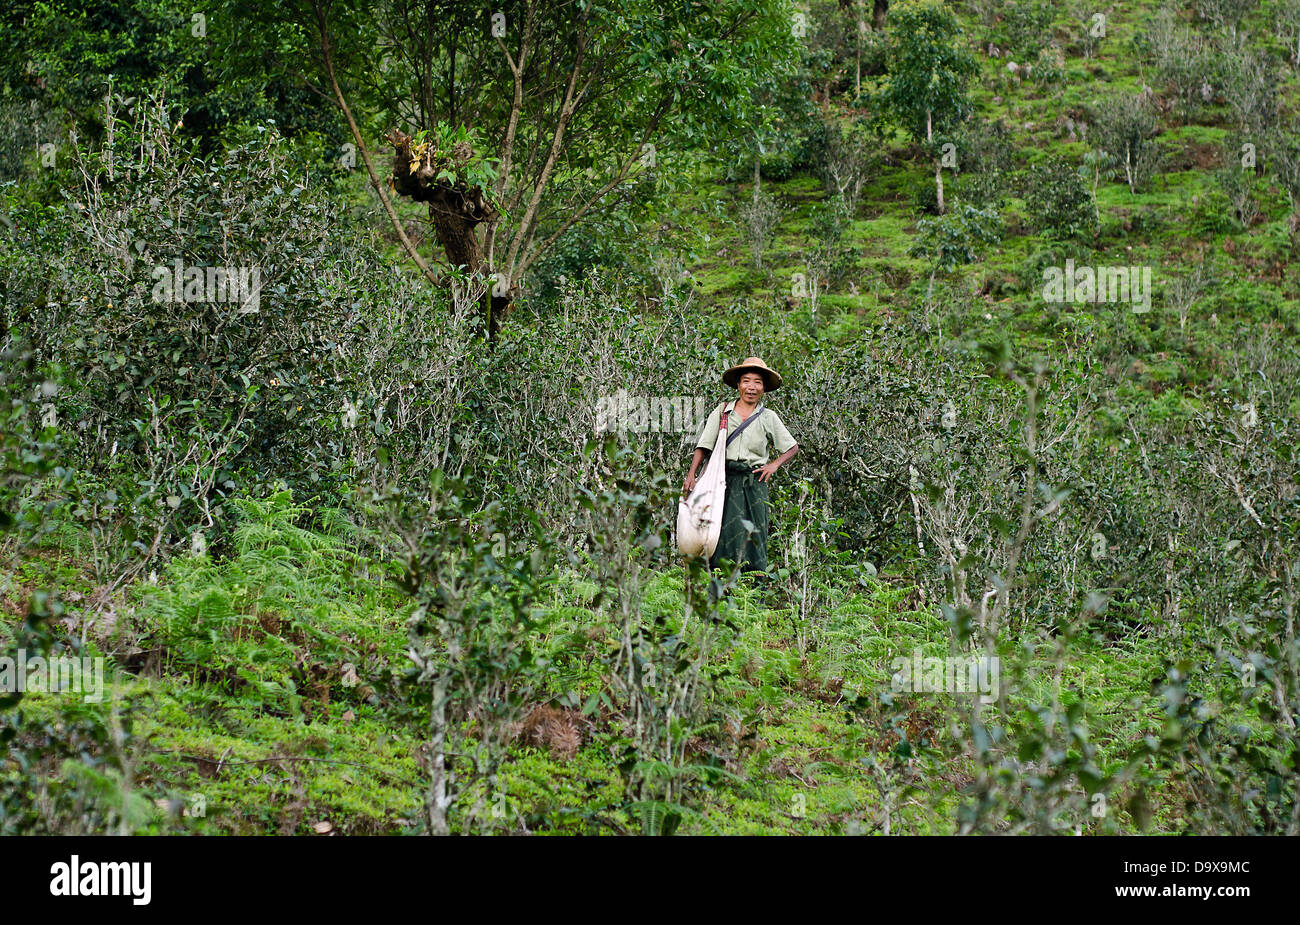 Myanmar local en las plantaciones de té,Namhsan ,el norte de la provincia de Shan de Birmania Foto de stock